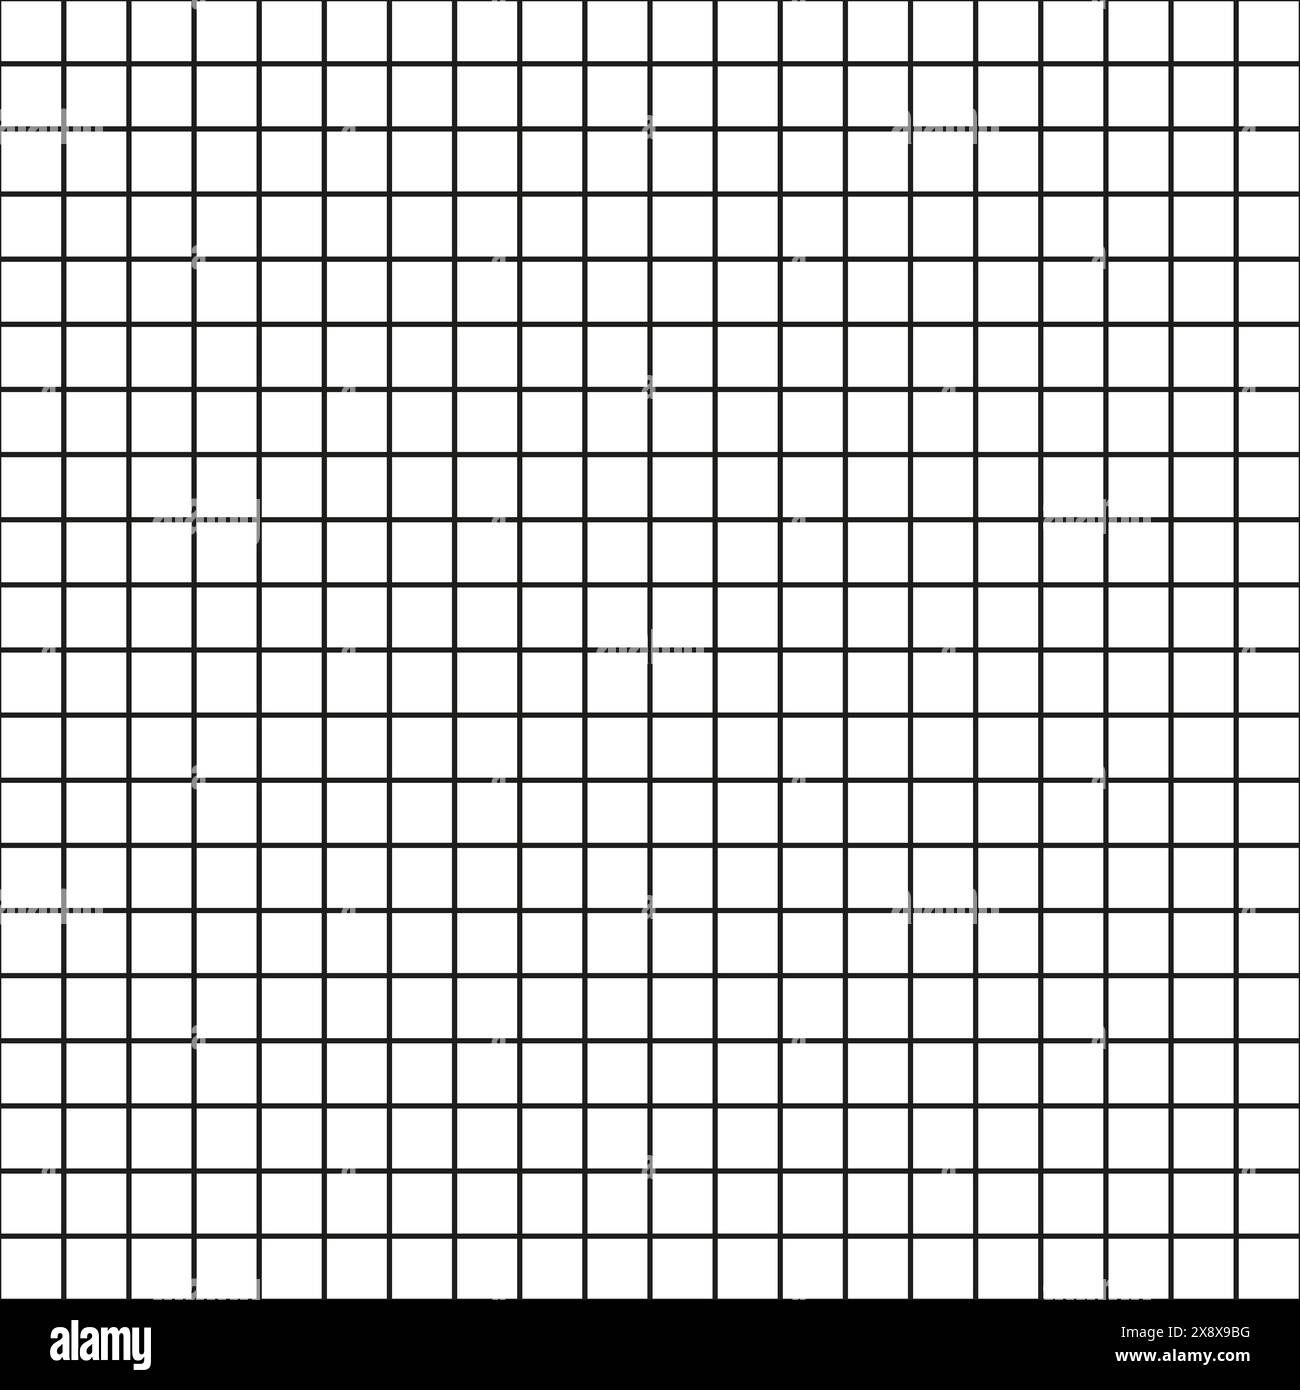 Gittervektormuster. Raster mit schwarzen Linien. Nahtloses quadratisches Raster. Hintergrund für geometrische Konstruktion. Stock Vektor